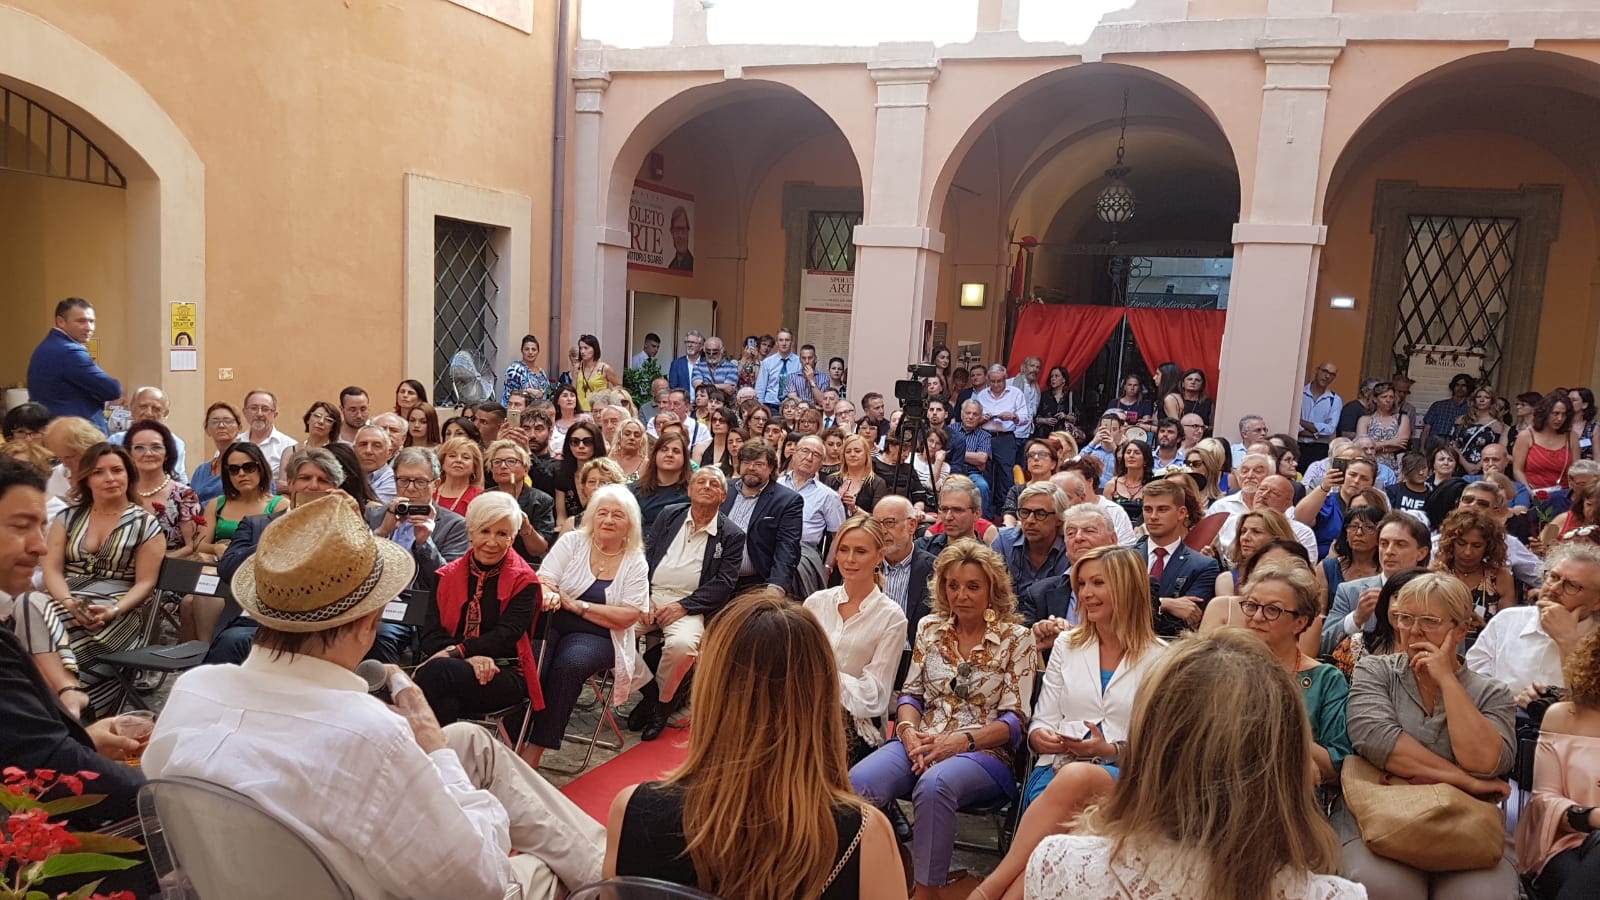 Foto 6 - Inaugurazione tra gli applausi per Spoleto Arte con Sgarbi, Alberoni e molti altri amici vip